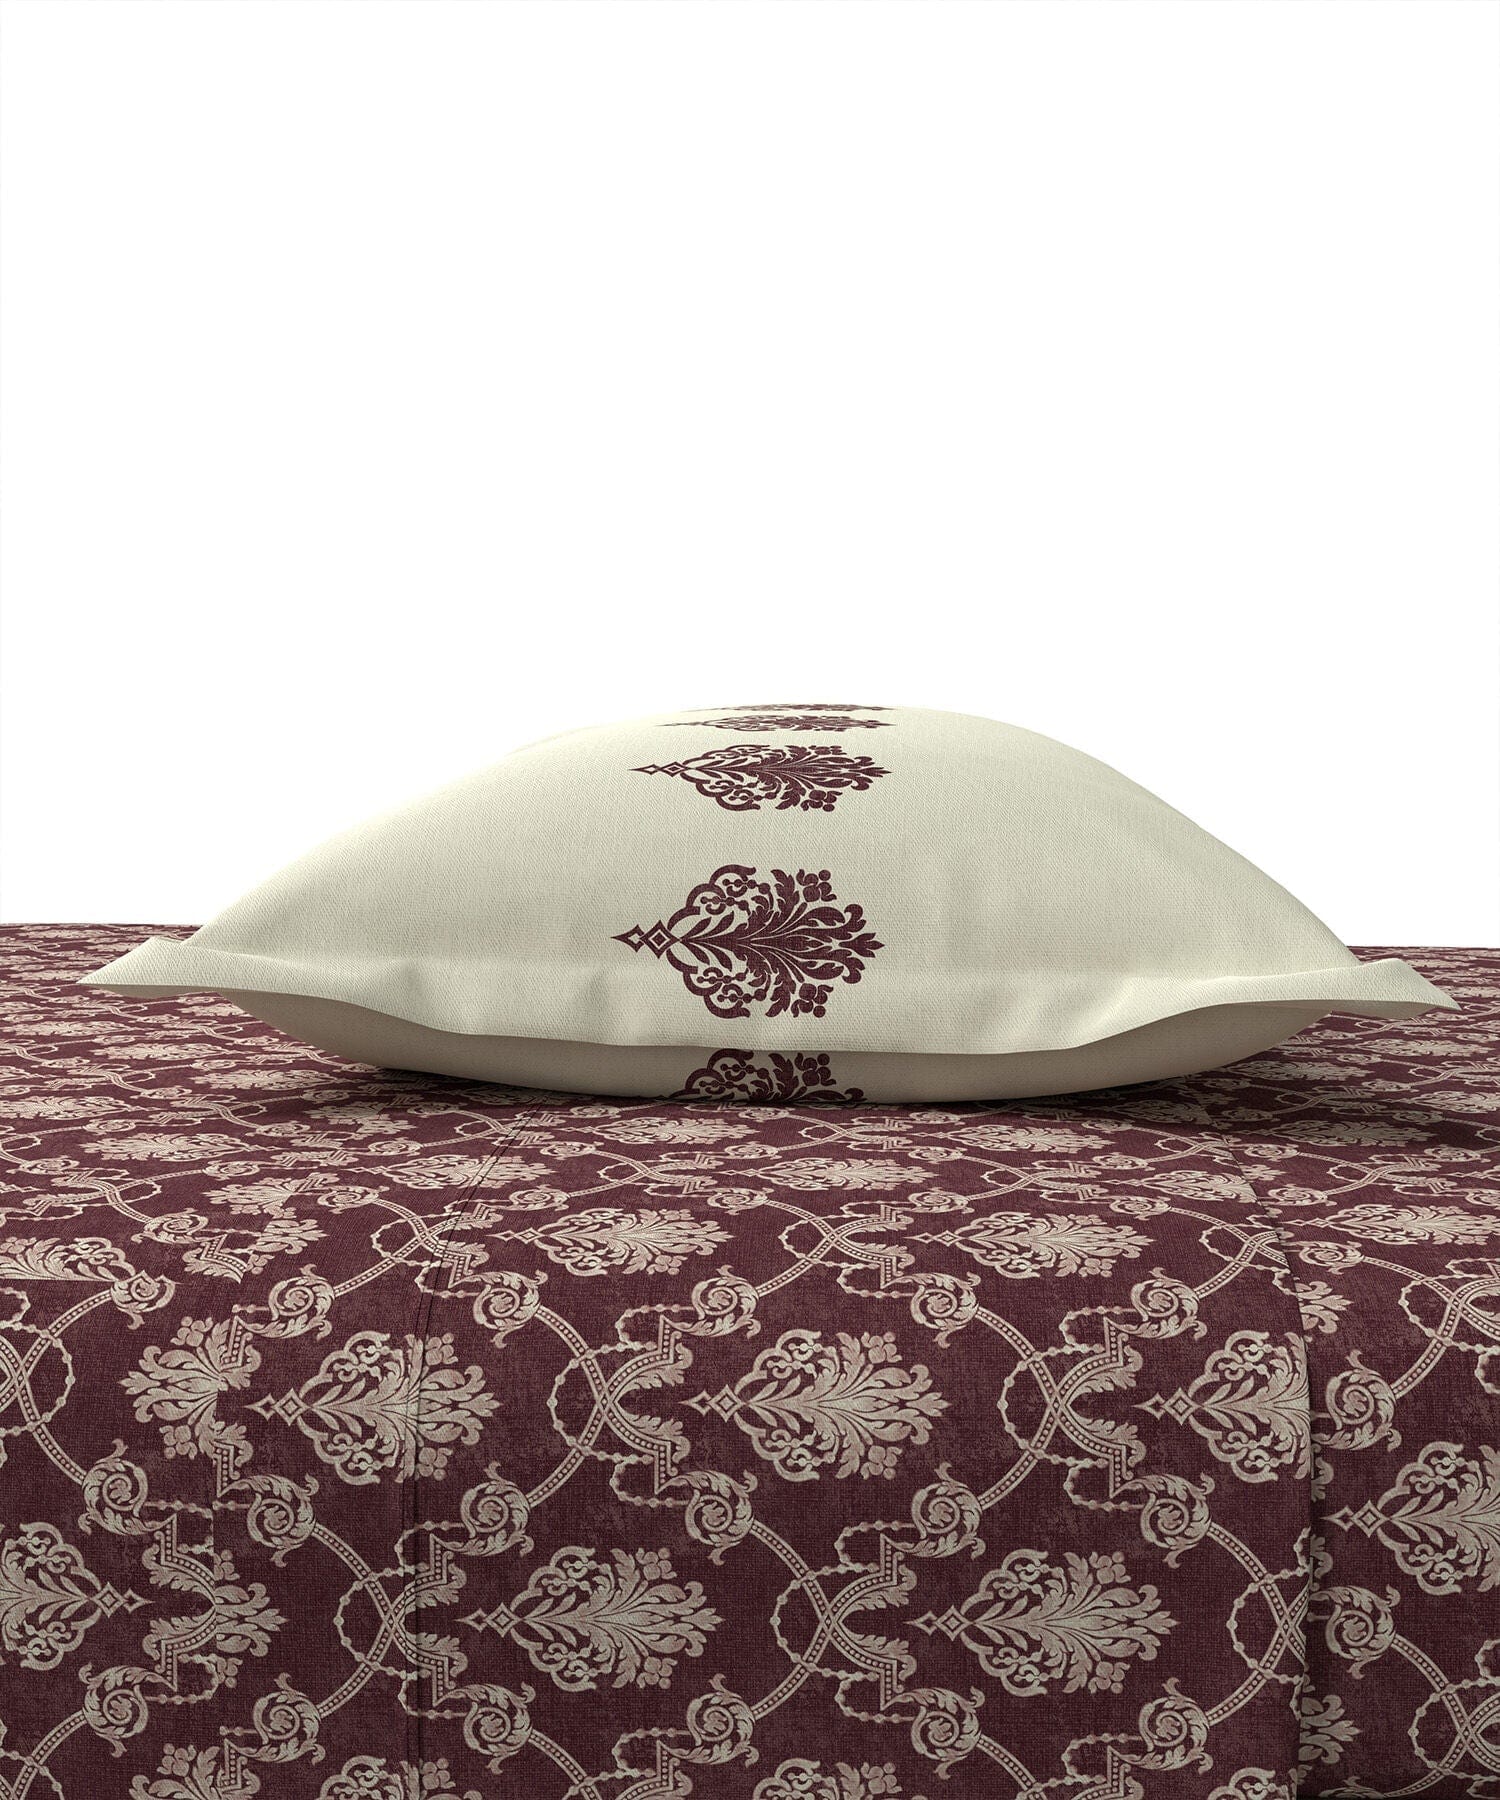 Queen Bedsheet ₹1839/-